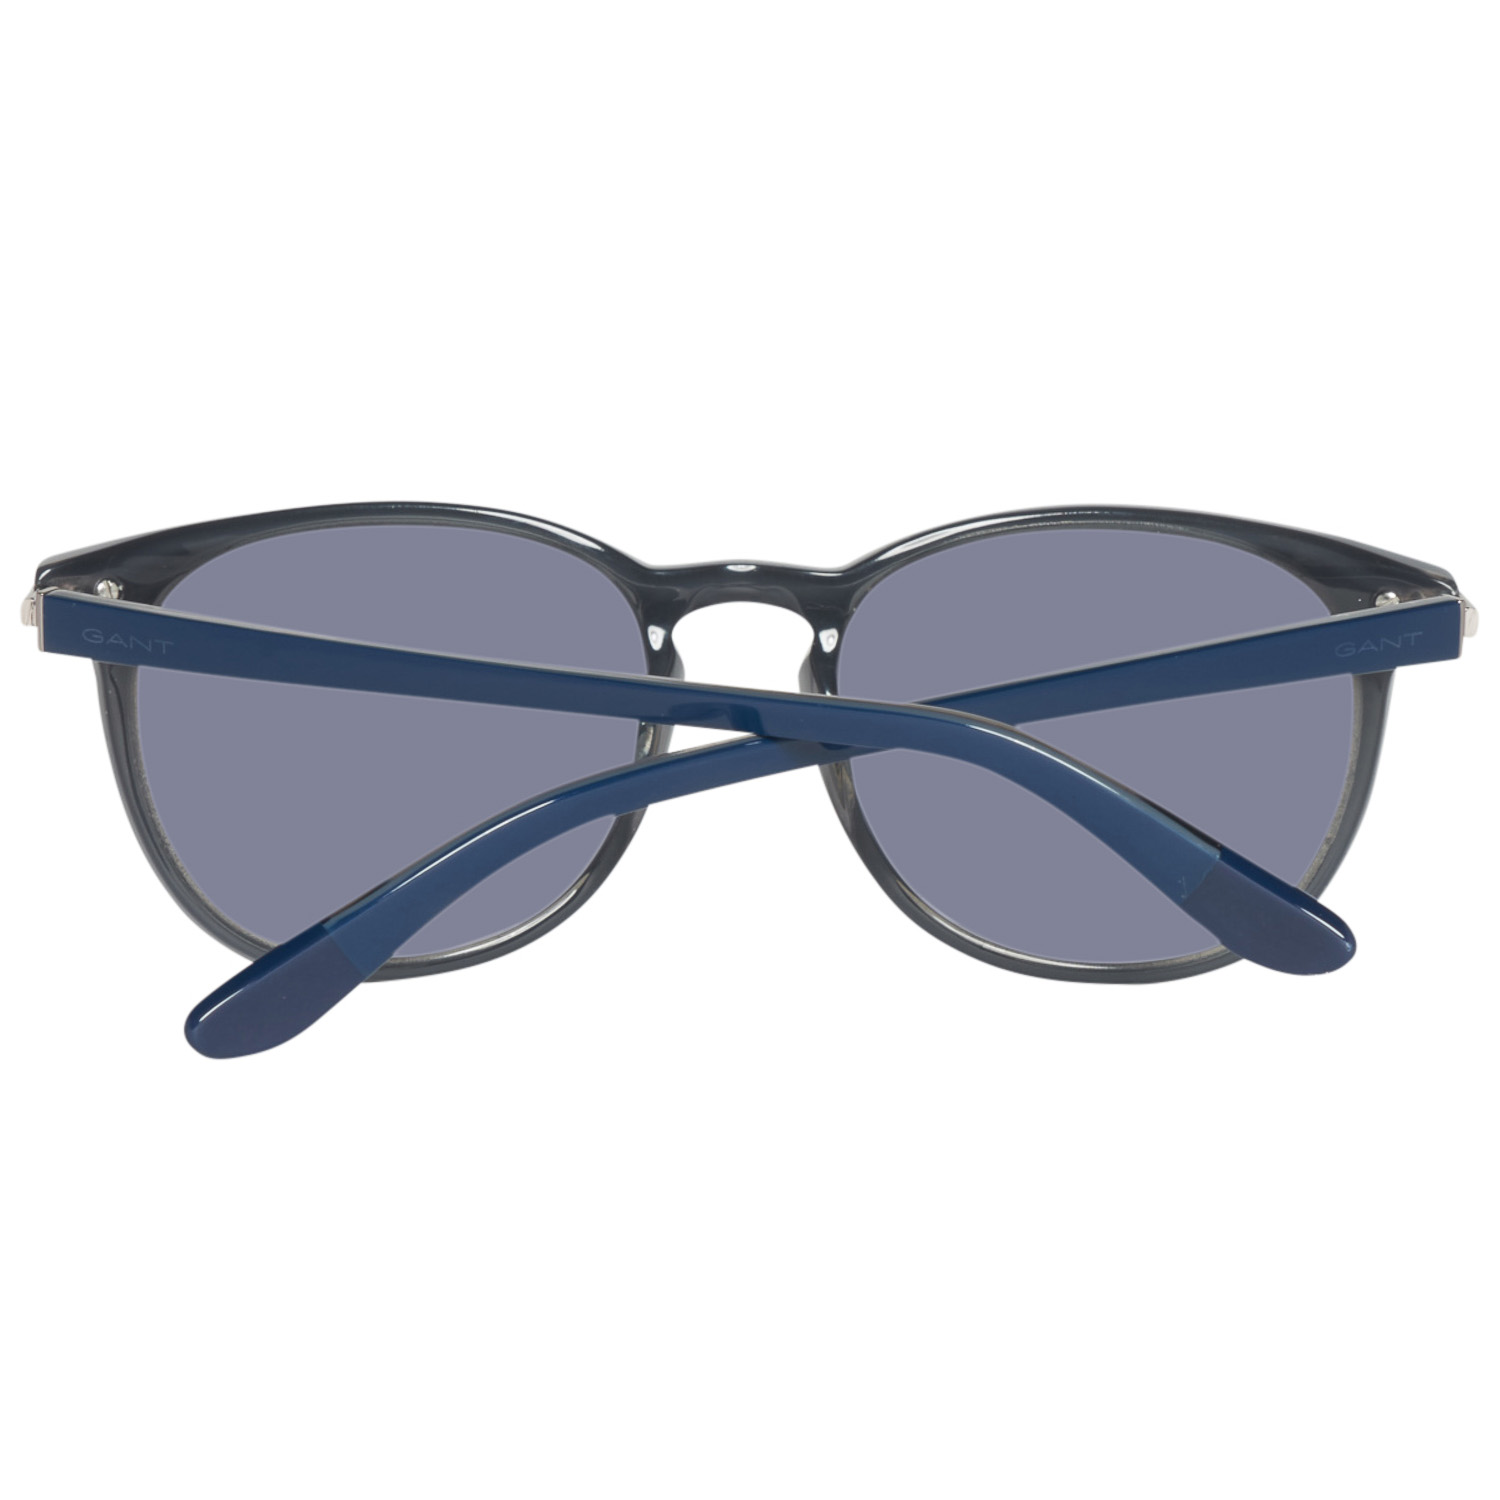 Gant Sunglasses GA7056 90A 54 Brown